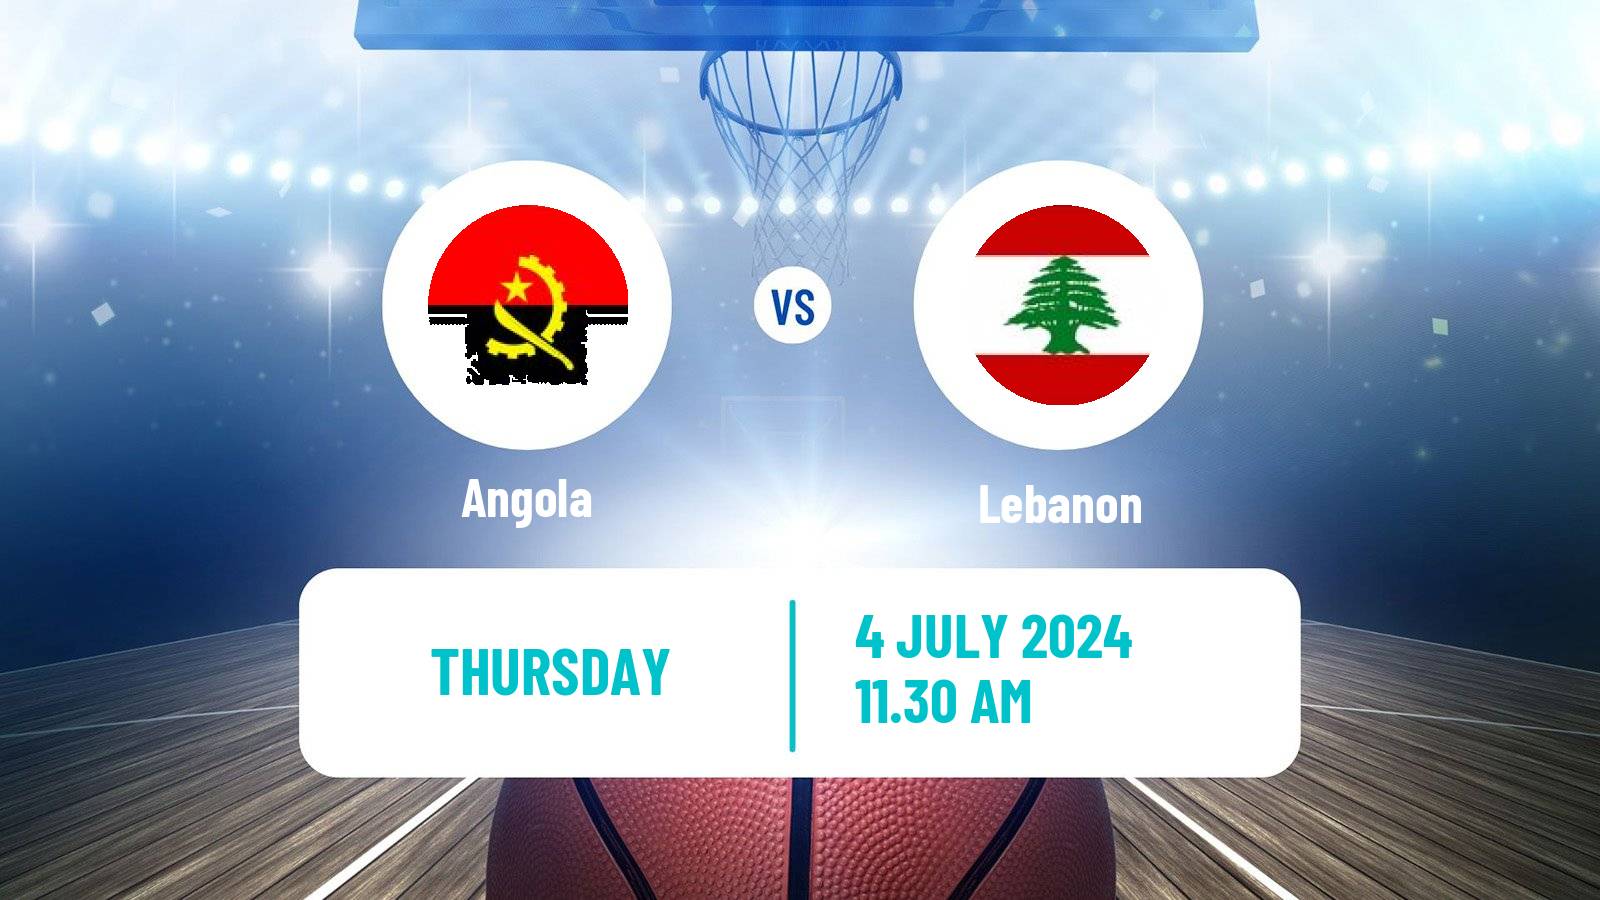 Basketball Olympic Games - Basketball Angola - Lebanon